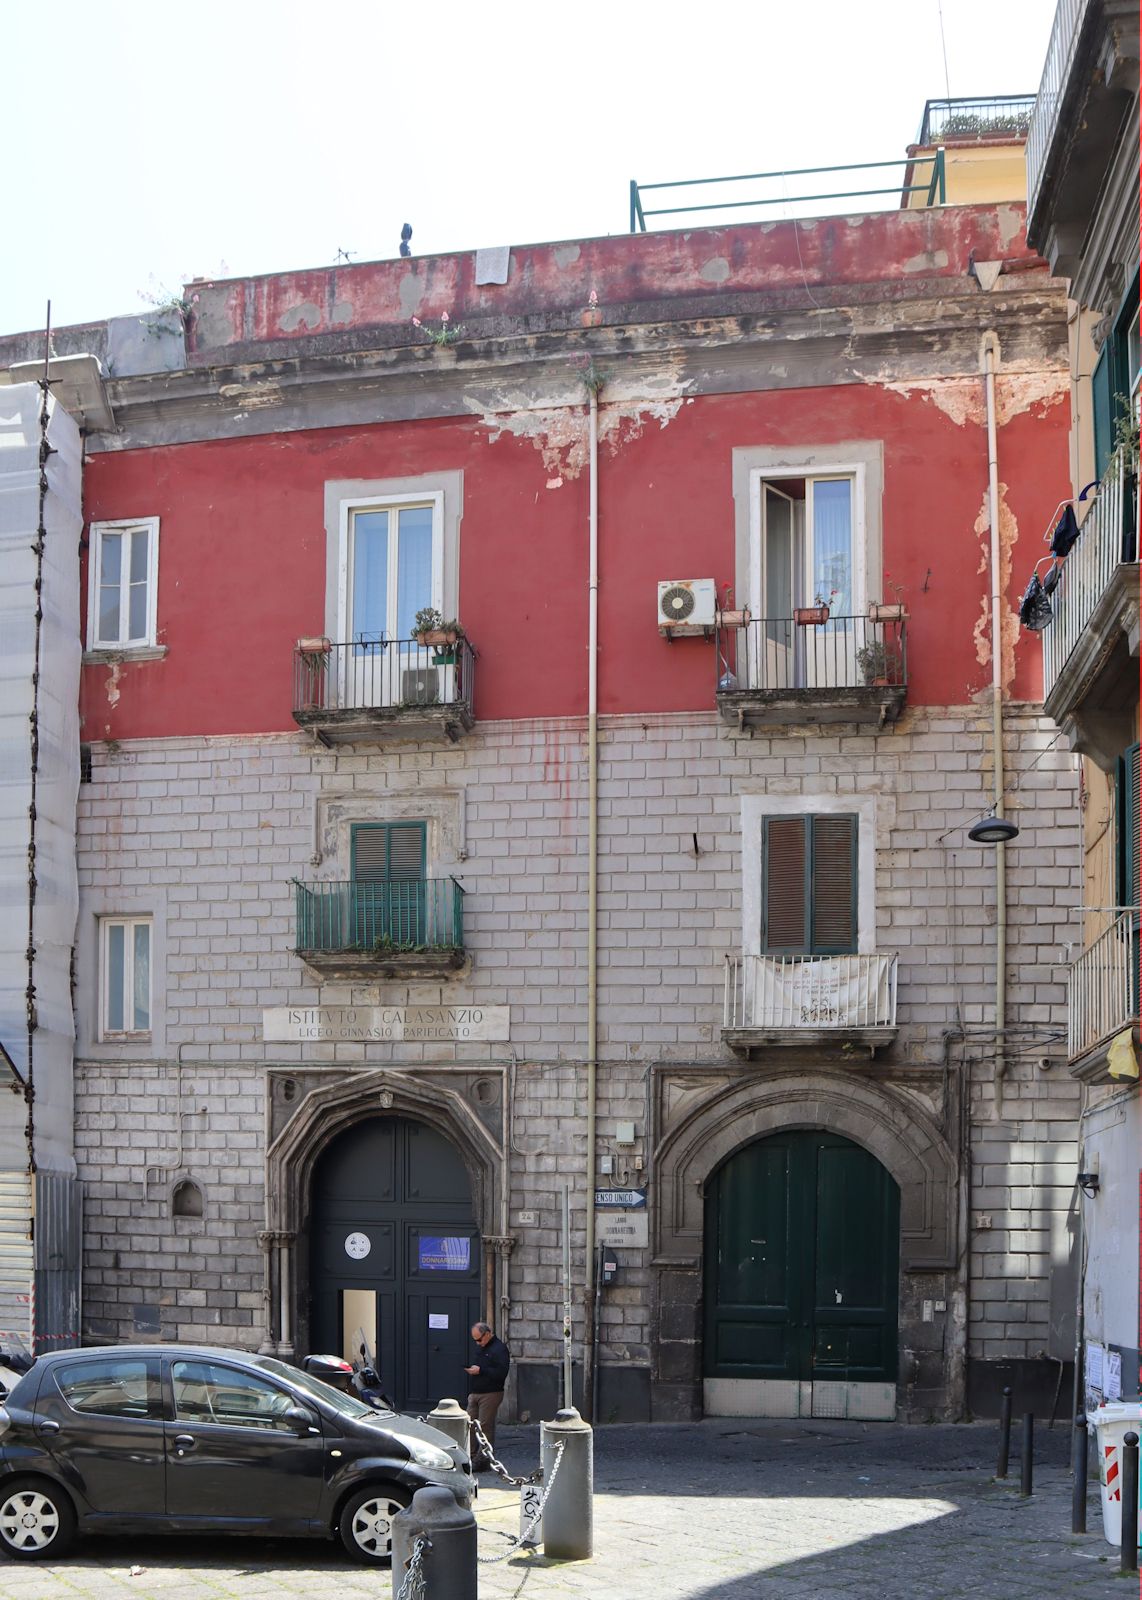 Institut Calasanzio in Neapel